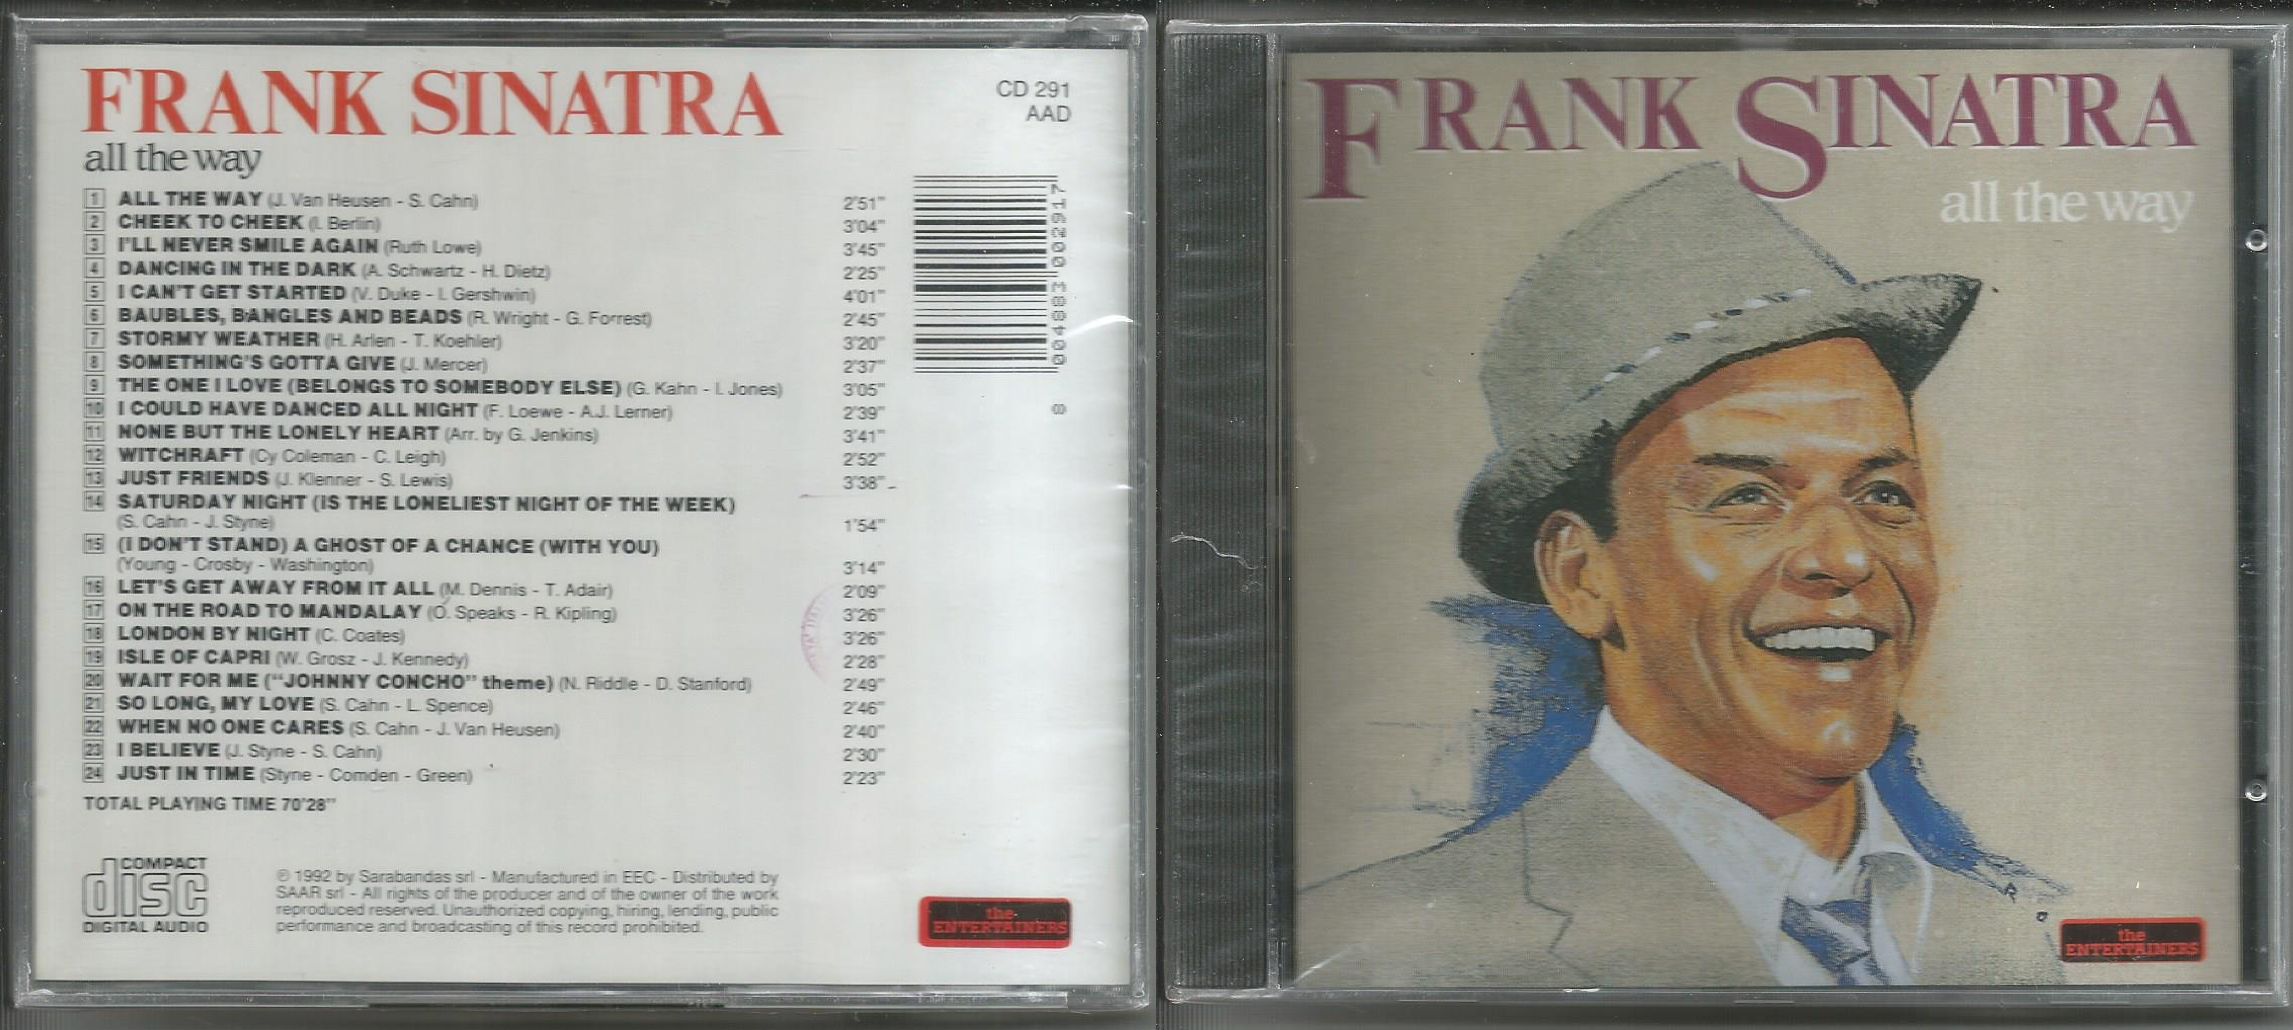 Песня фрэнка синатры my way перевод. CD Sinatra, Frank: my way. All the way Синатра. All the way Фрэнк Синатра. Новогодняя пластинка Синатры.